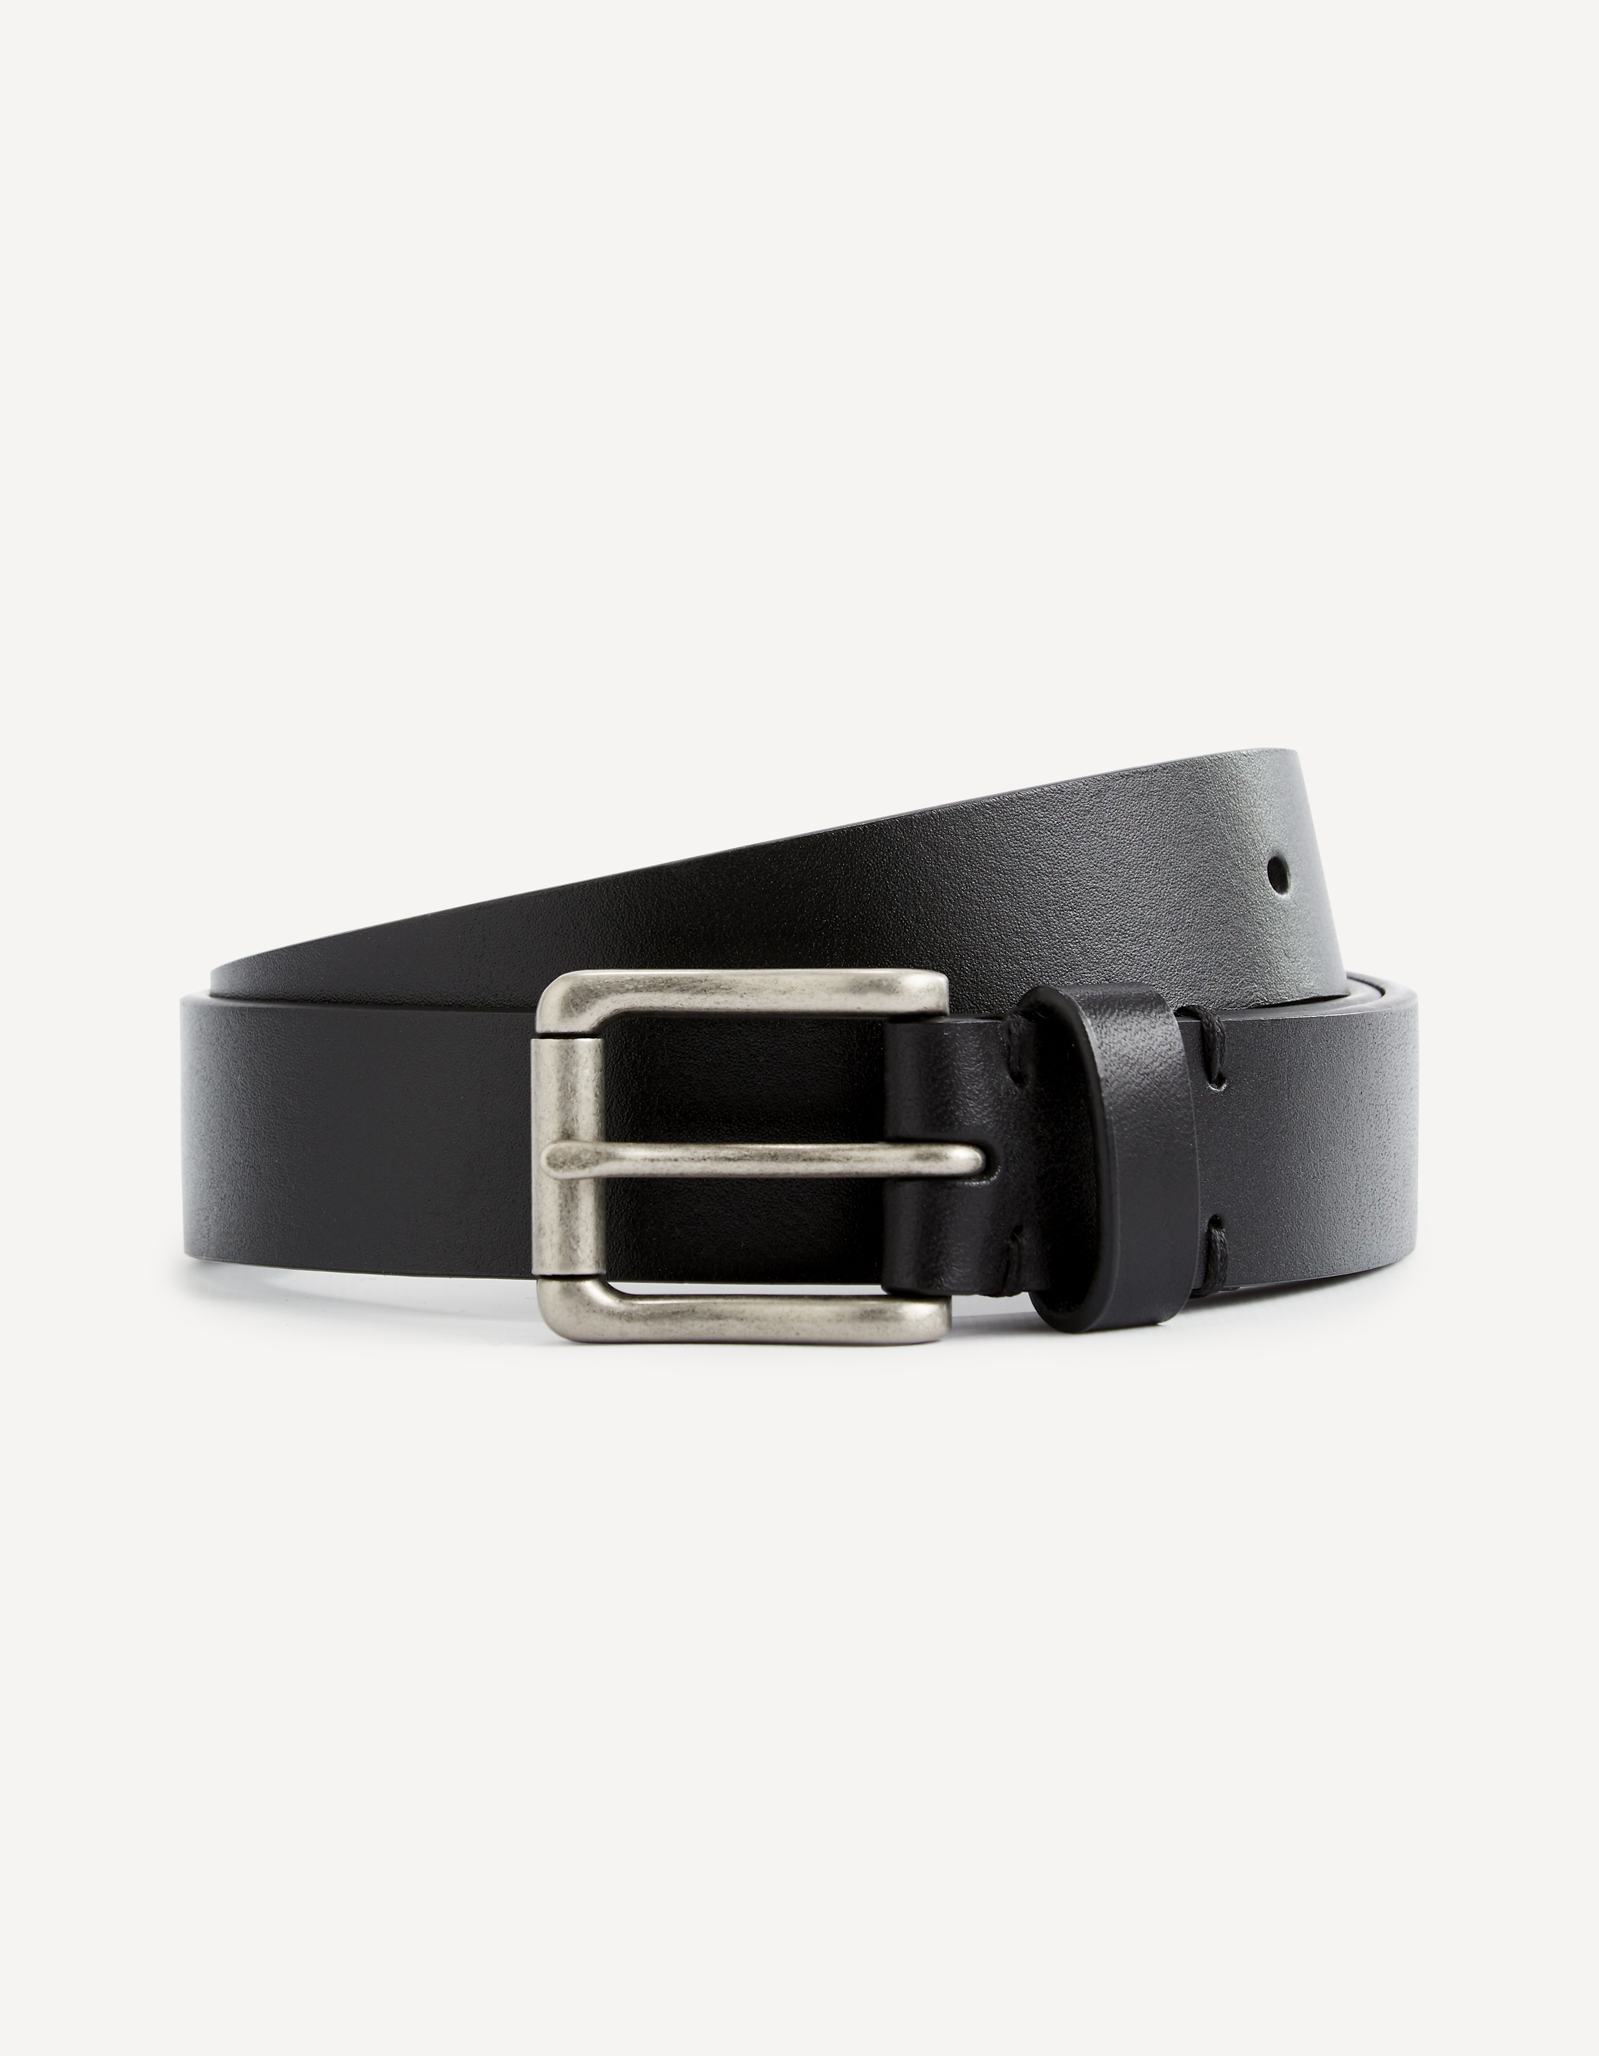 Celio Leather Belt Visual - Men